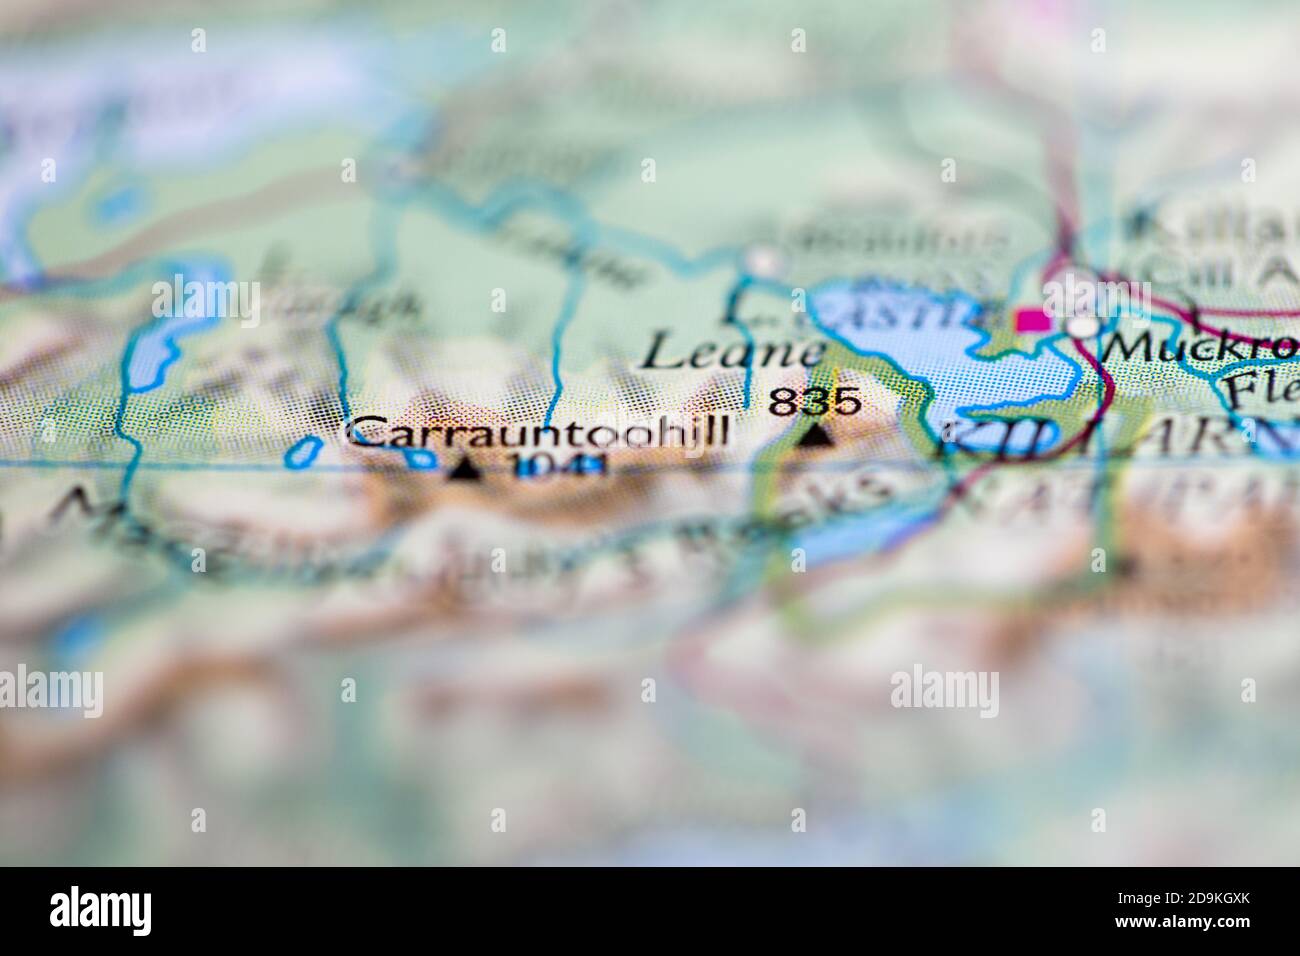 Profundidad de campo reducida se centra en la ubicación del mapa geográfico de Monte Carrauntoohil en Irlanda continente europeo en atlas Foto de stock